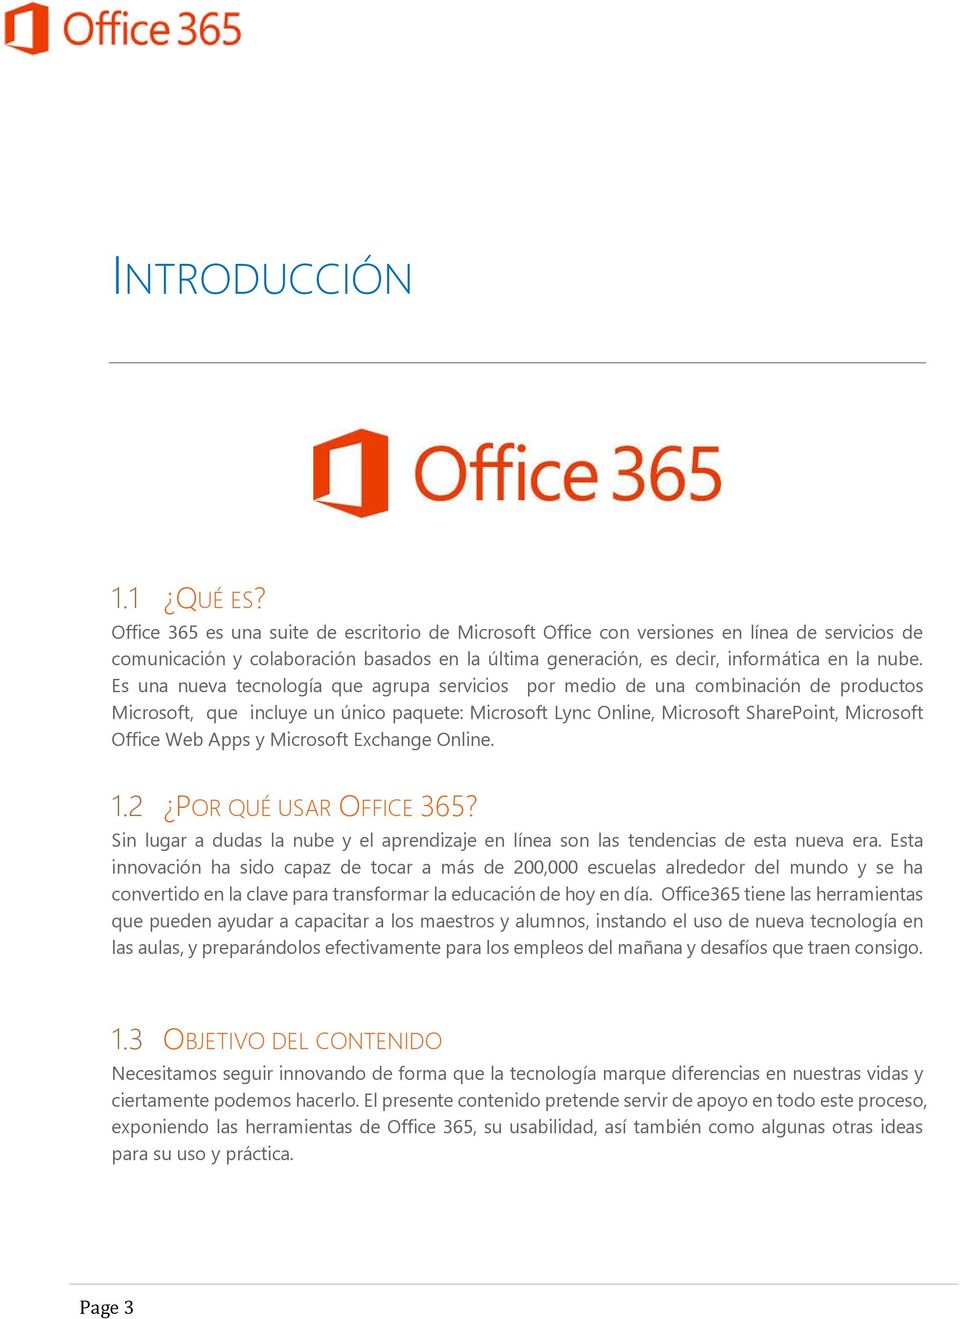 Es una nueva tecnología que agrupa servicios por medio de una combinación de productos Microsoft, que incluye un único paquete: Microsoft Lync Online, Microsoft SharePoint, Microsoft Office Web Apps